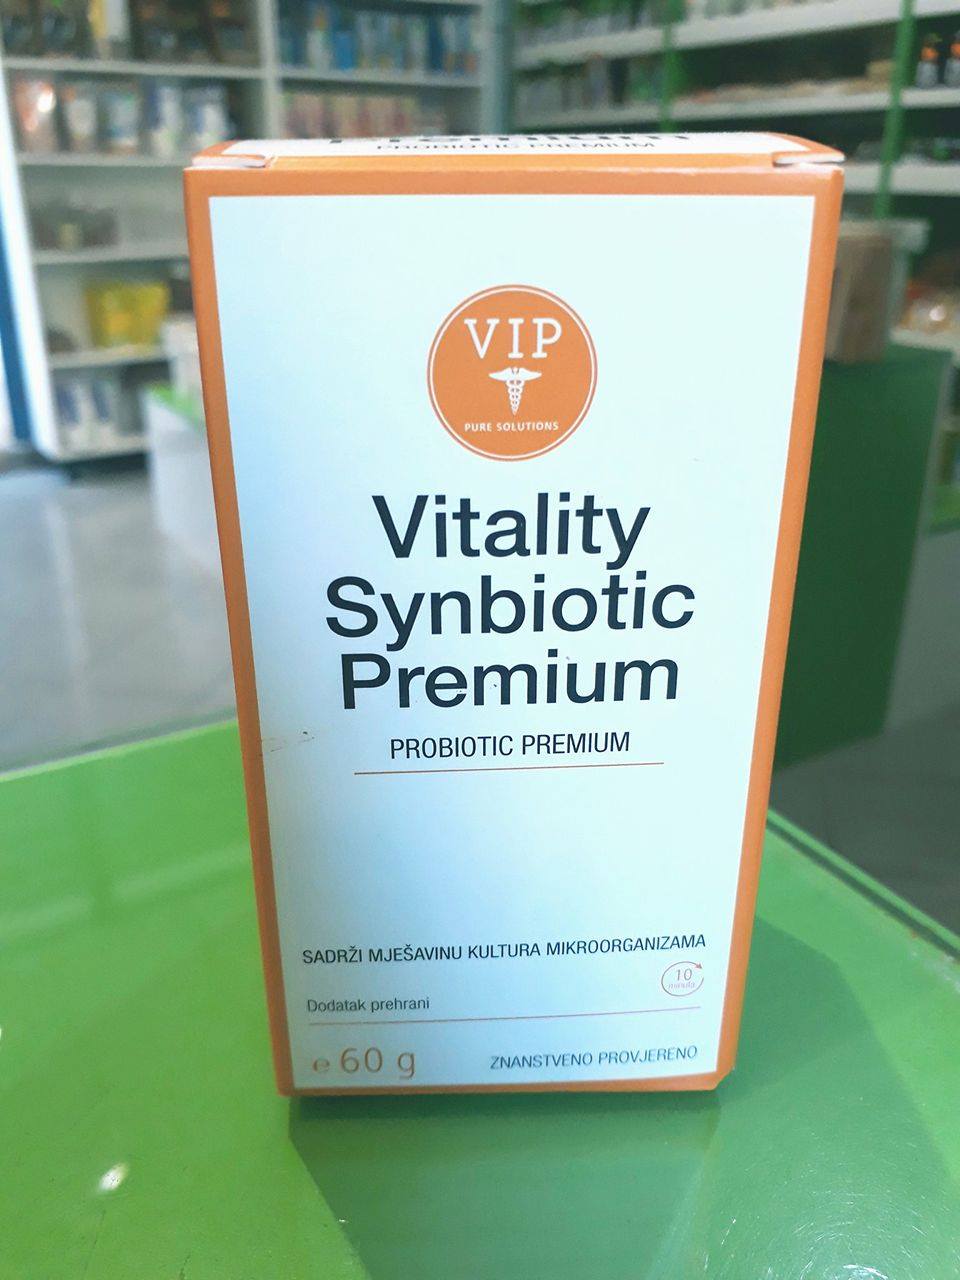 VIP Vitality Synbiotic Premium